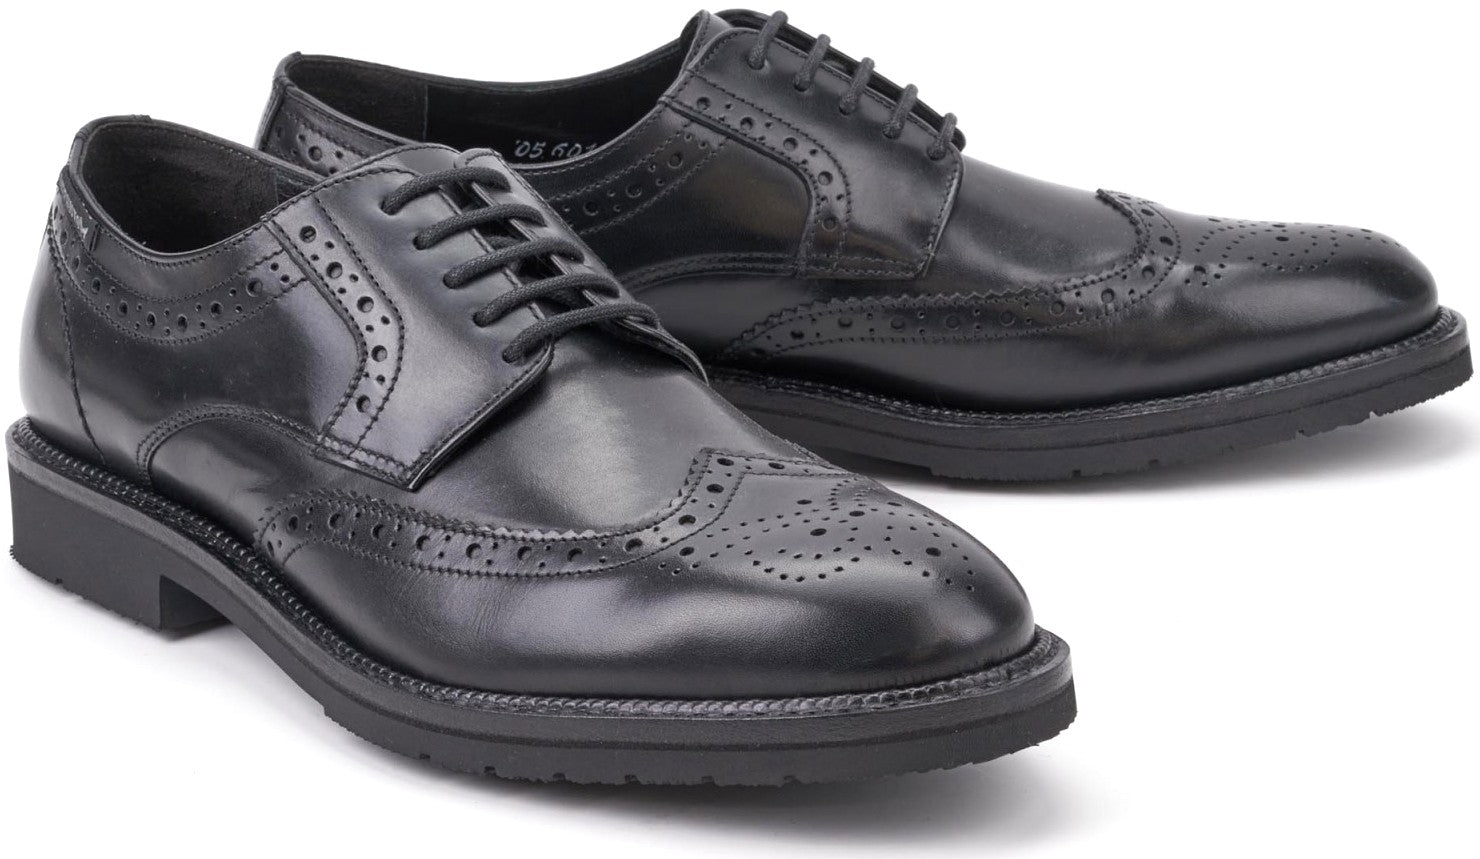 Mephisto TYRON black leather lace shoe GOODYEAR WELT - ChaplinshoesMephisto TYRON black leather lace shoe GOODYEAR WELTMephisto